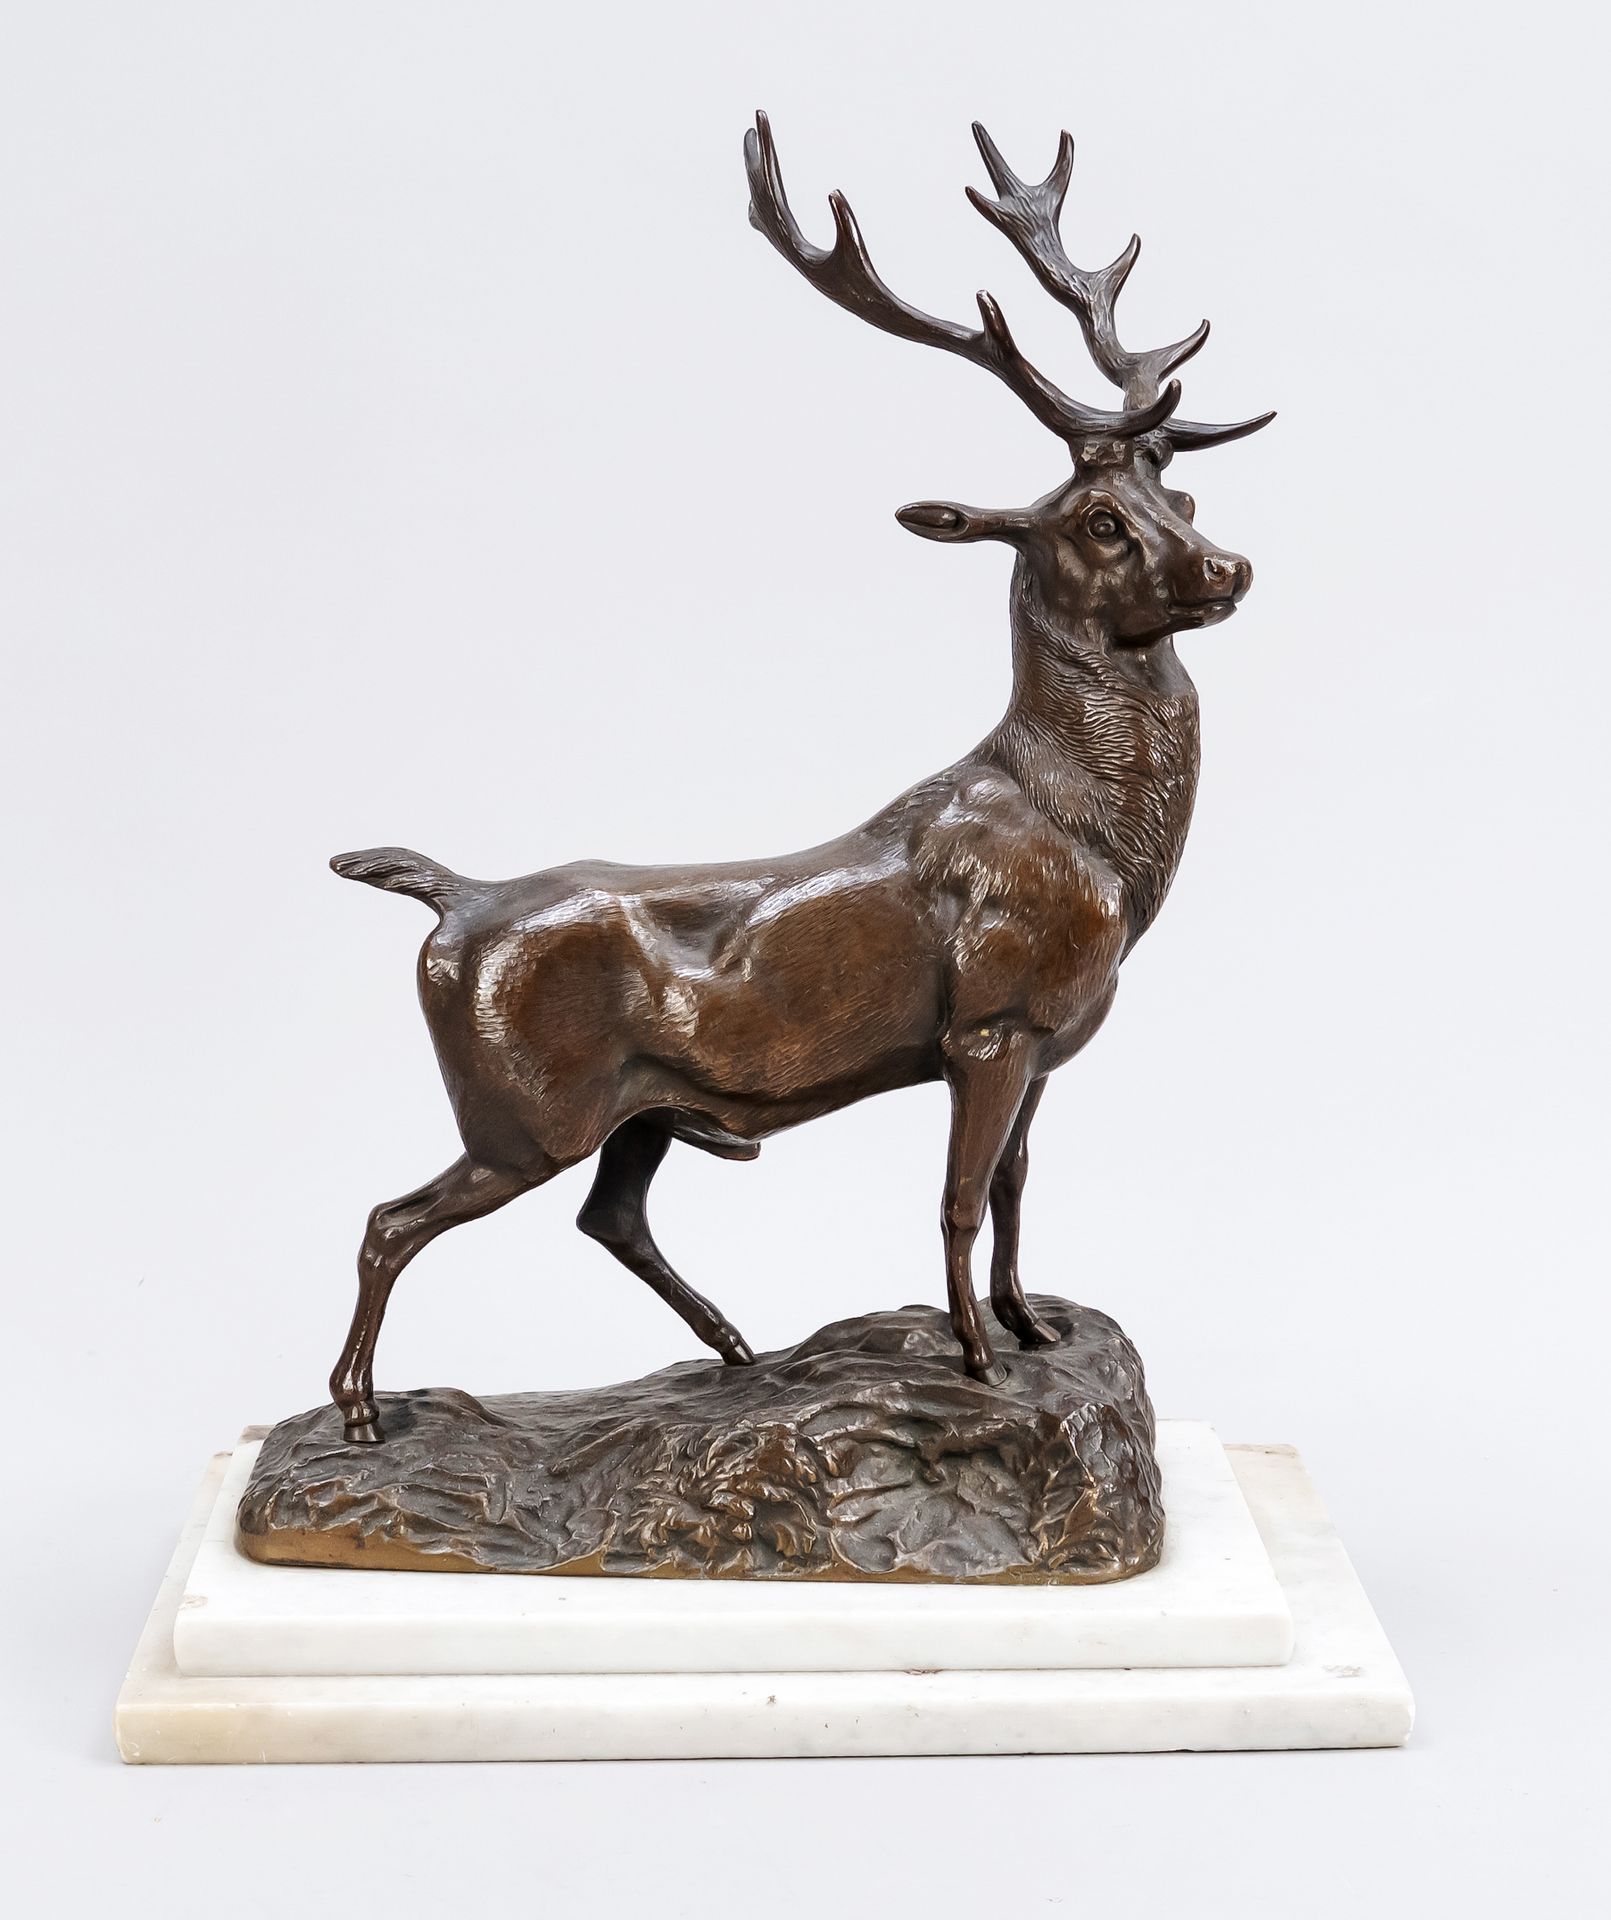 Null 匿名的动物雕塑家，约1900年，大写的雄鹿，棕色的青铜在阶梯状的大理石基座上，没有签名，基座被摩擦，总高度45厘米。